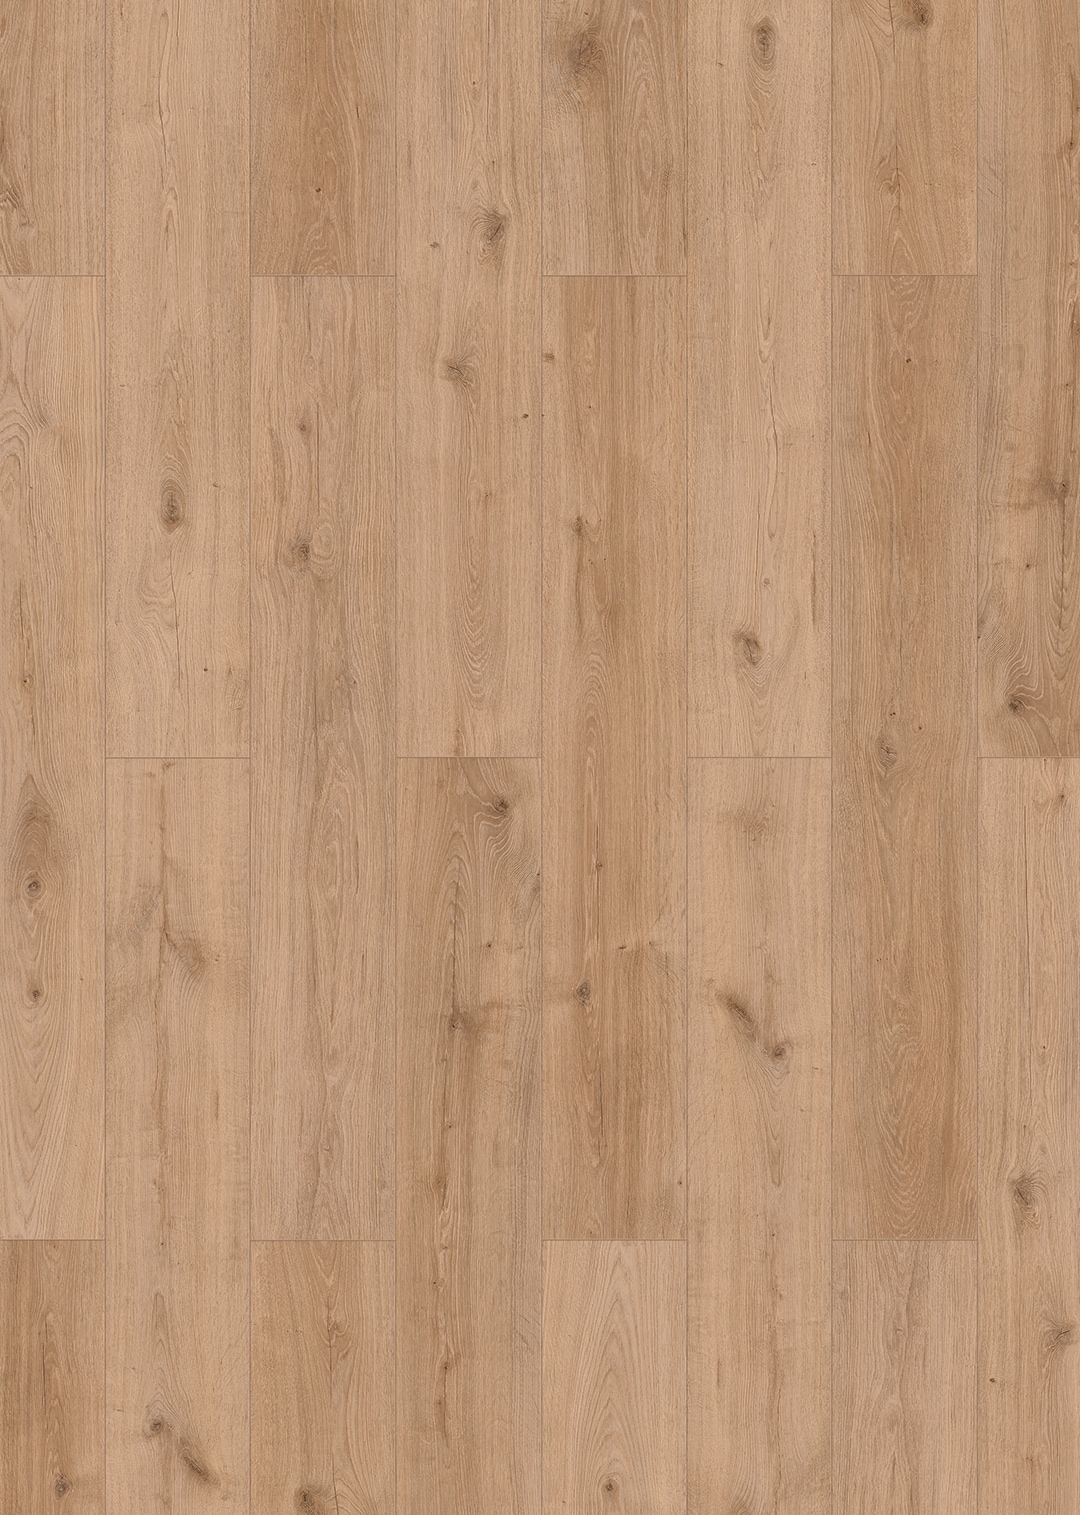 allen + roth Sierra Tan Oak 8-mm T x 8-in W x 50-in L Water Resistant Wood Plank Laminate Flooring (23.92-sq ft) in Brown | 56097